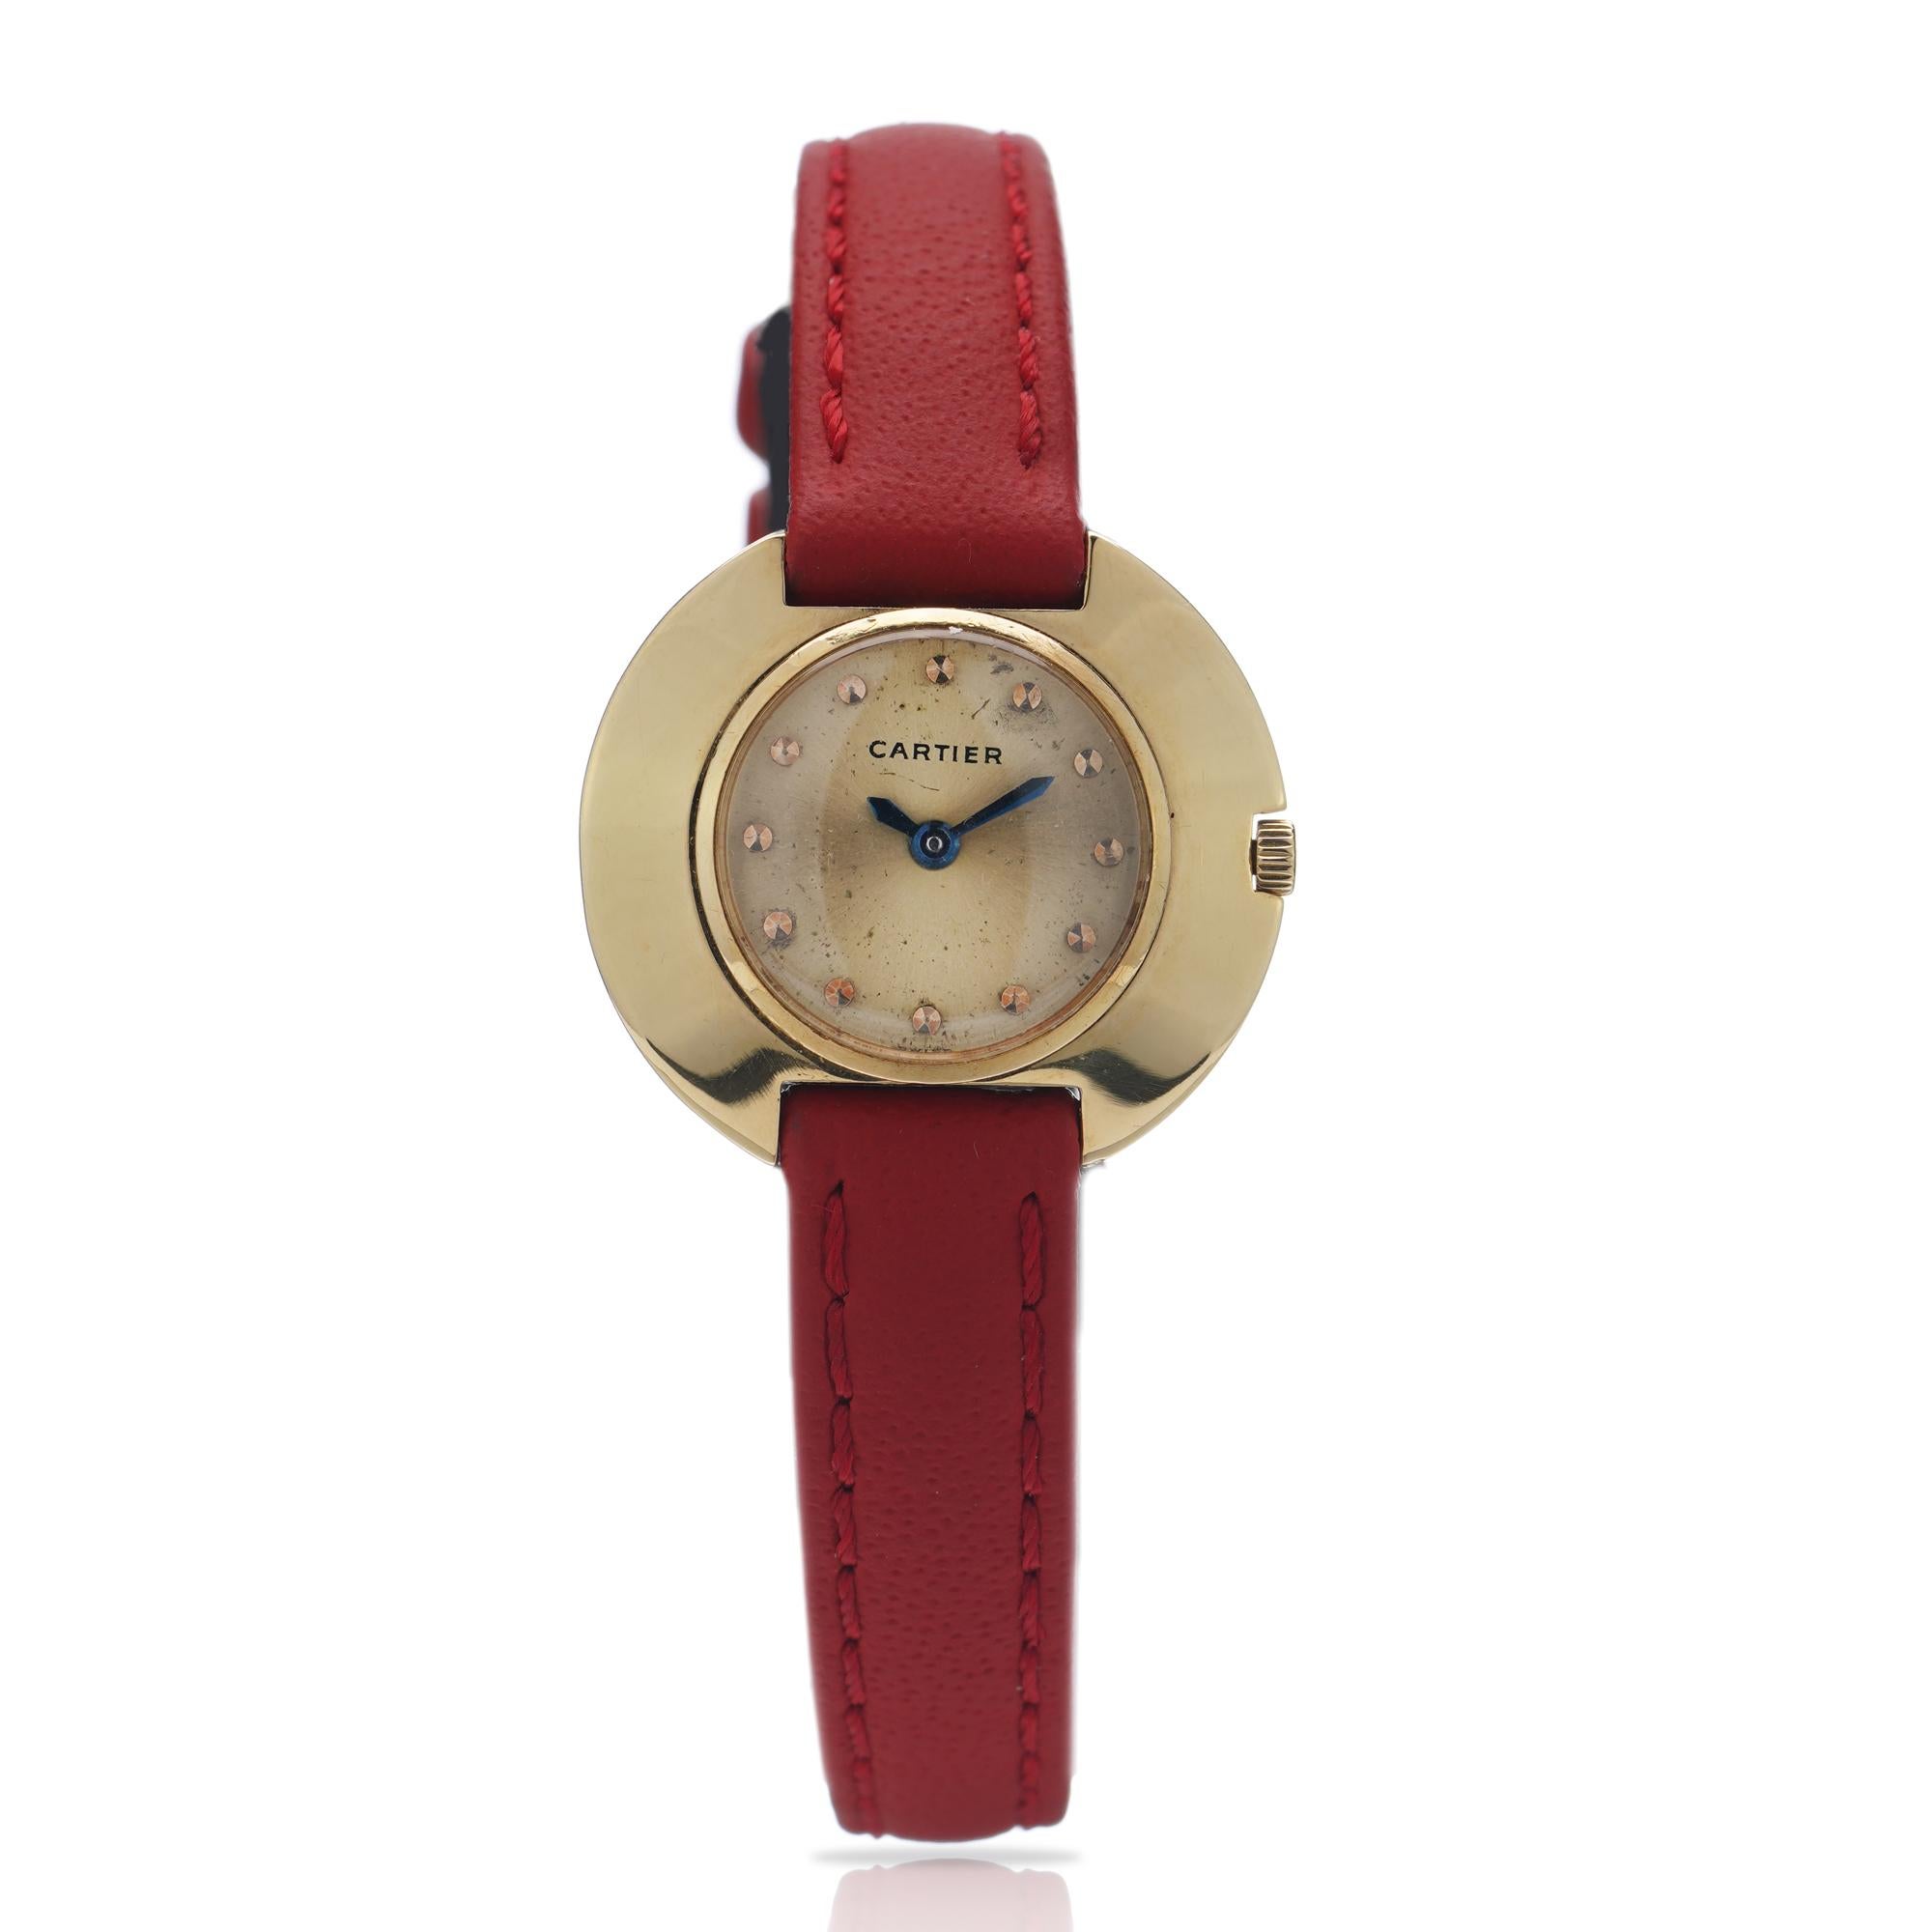 Cartier Vintage Runde Damen 18k. Gelbgold-Armbanduhr.
Hergestellt in Genf, ca.1950er Jahre 
Gepunzt mit 750 (ein Standard für 18kt. Gold).  Genève. 

Geschlecht: Frau
Gehäusegröße: 25 mm
Uhrwerk: Handaufzug
Uhrenarmband MATERIAL: rotes